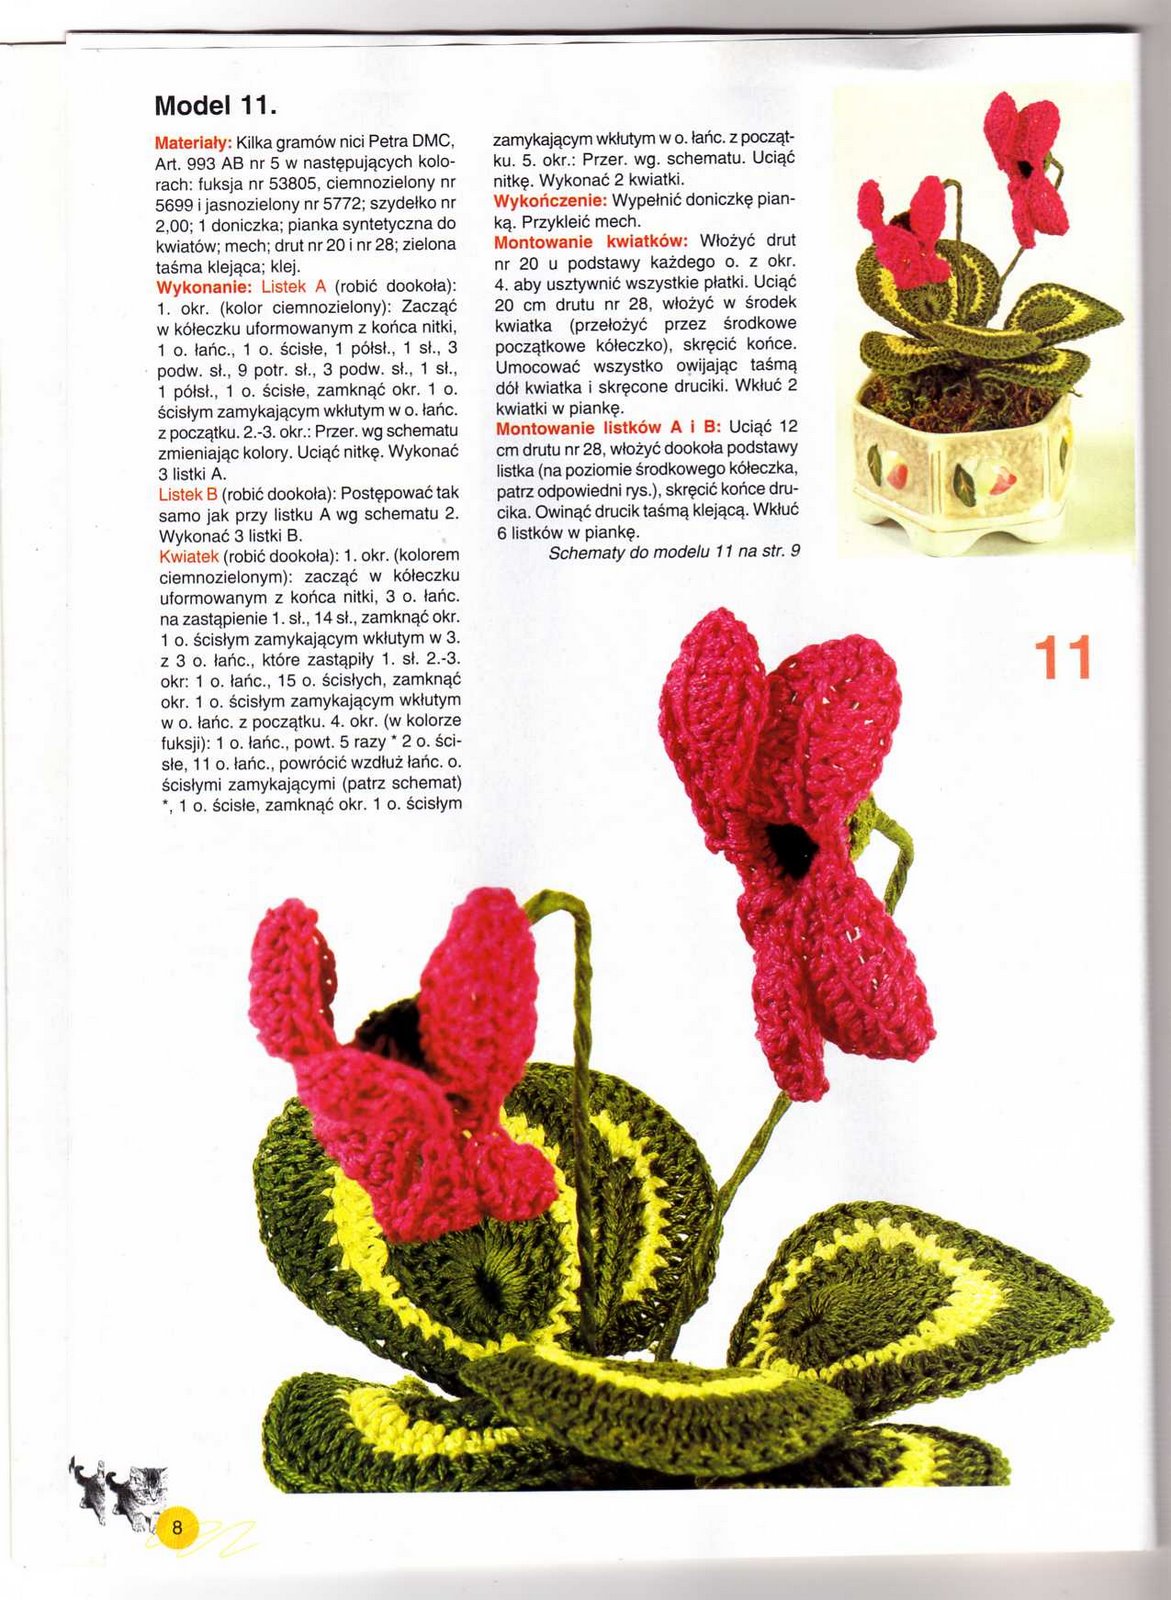 crochet cyclamen (1)